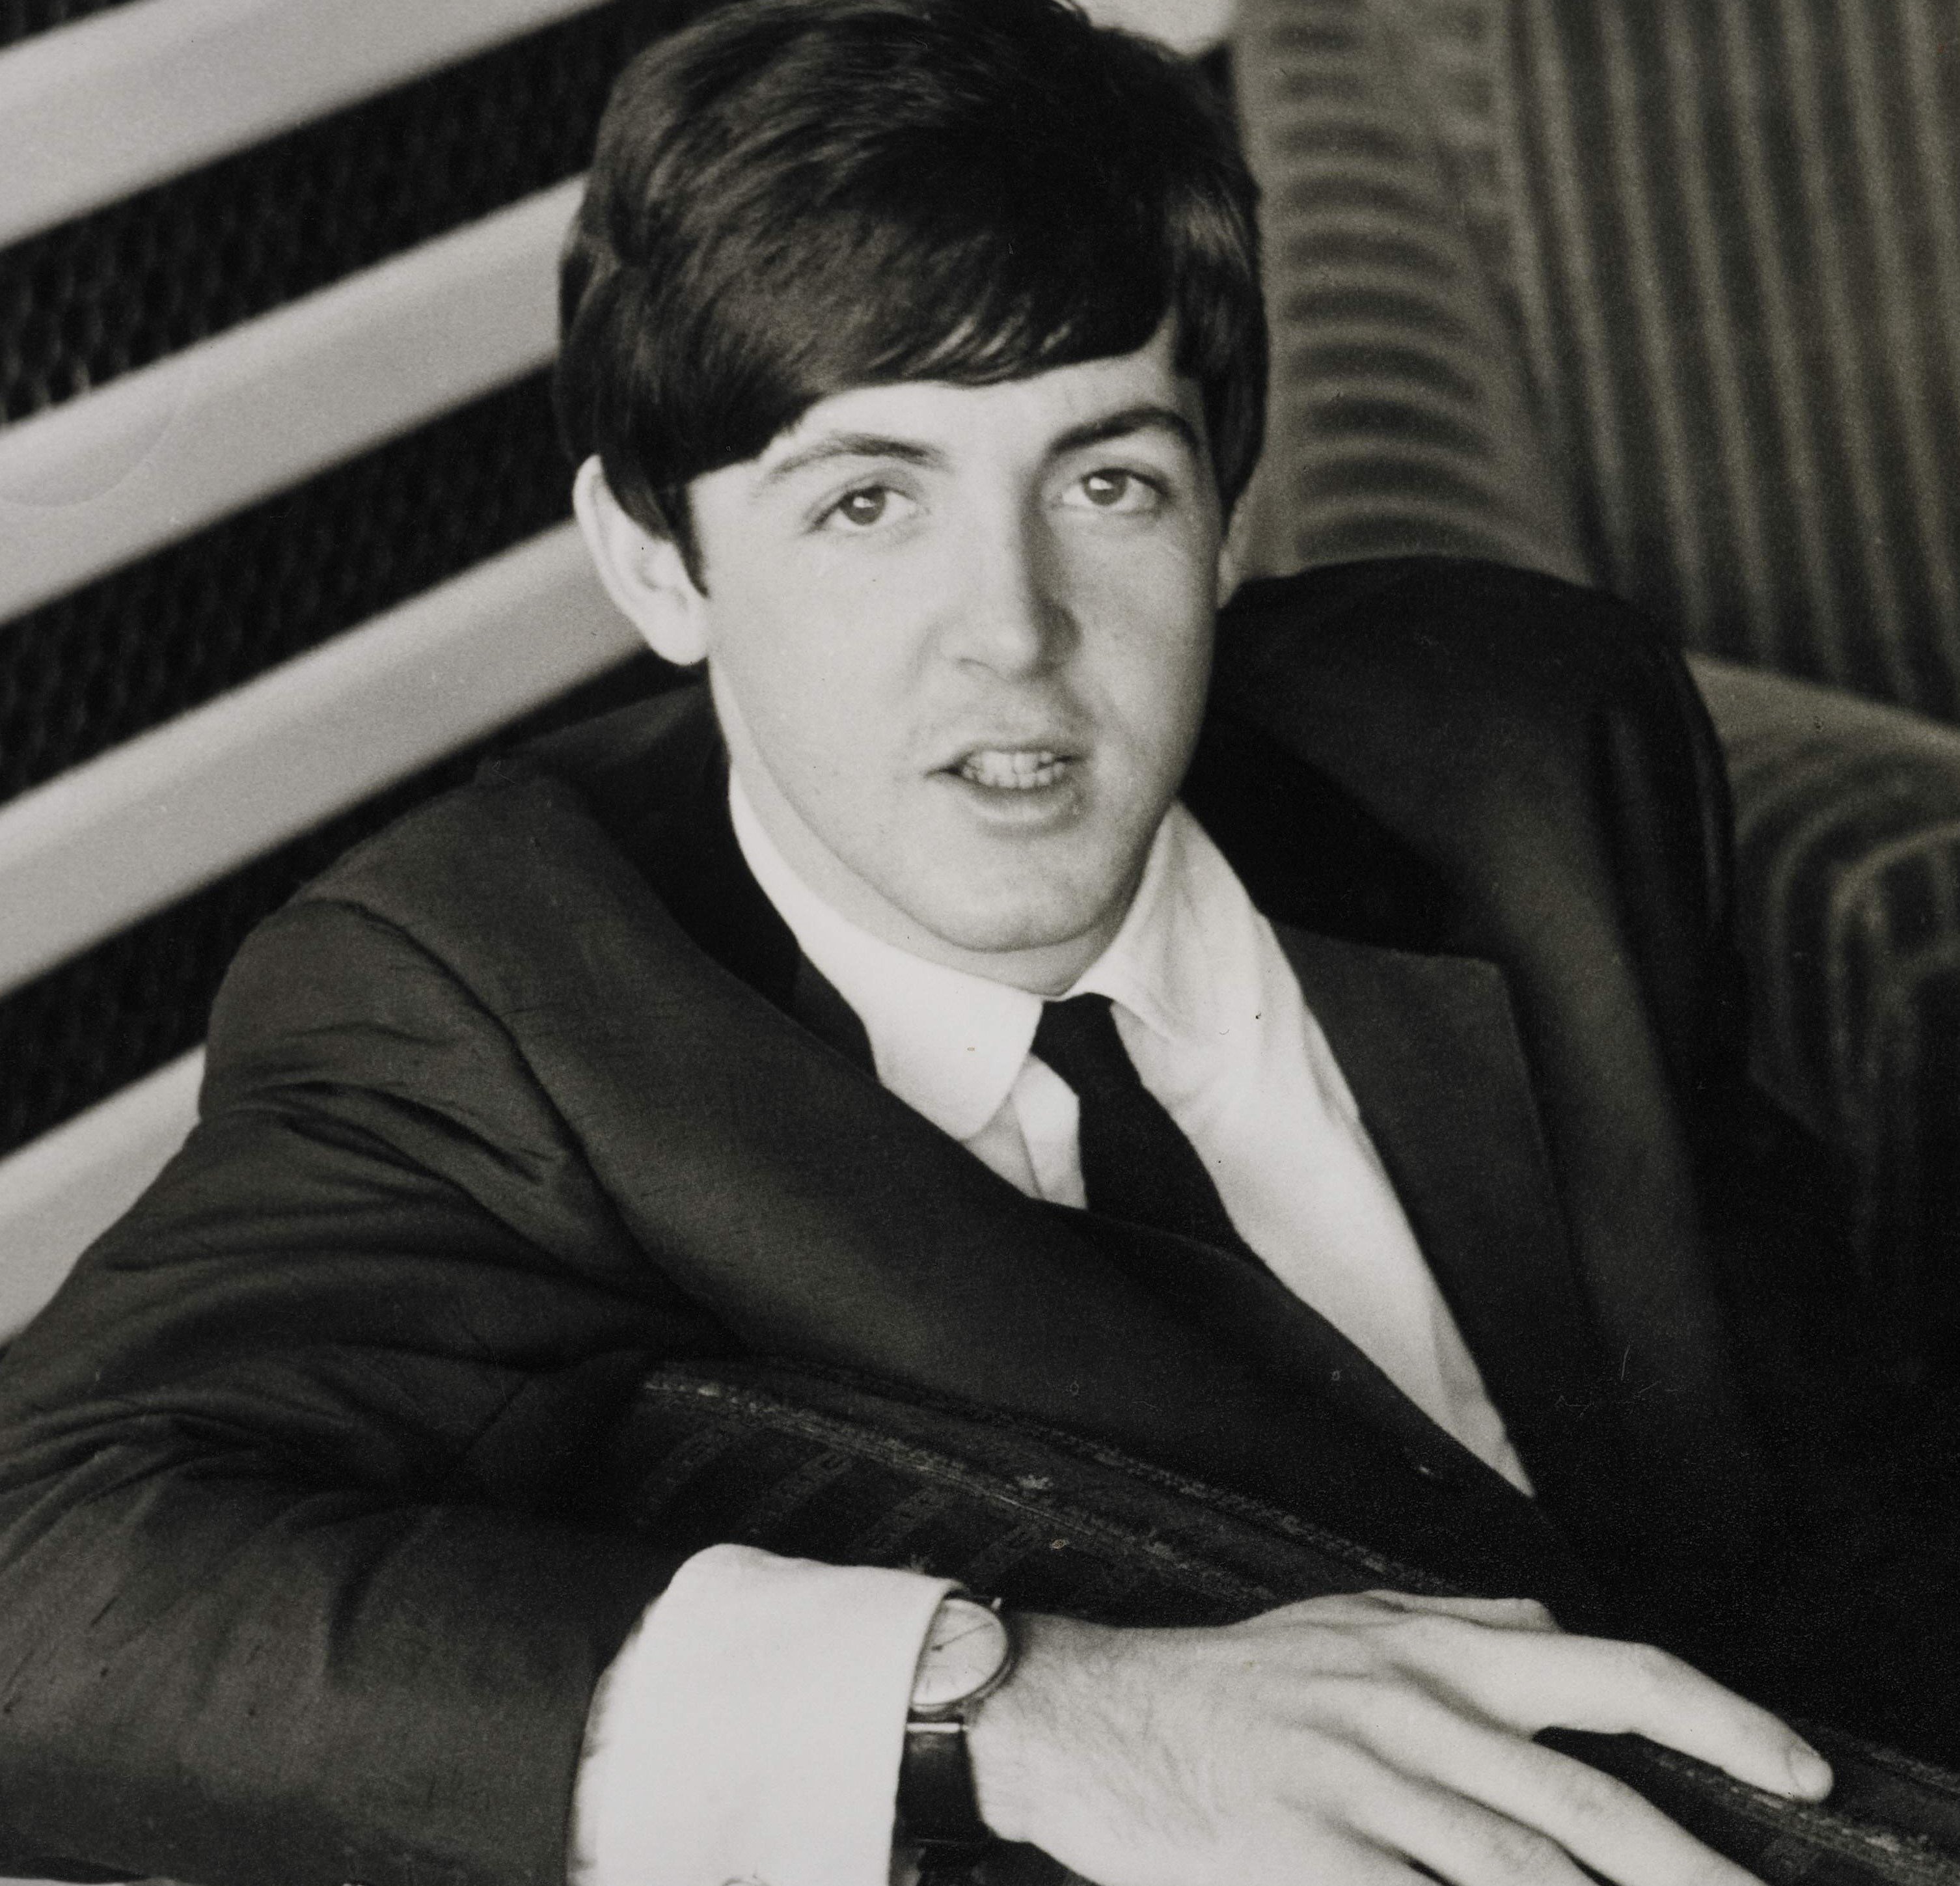 Paul McCartney wearing a suit